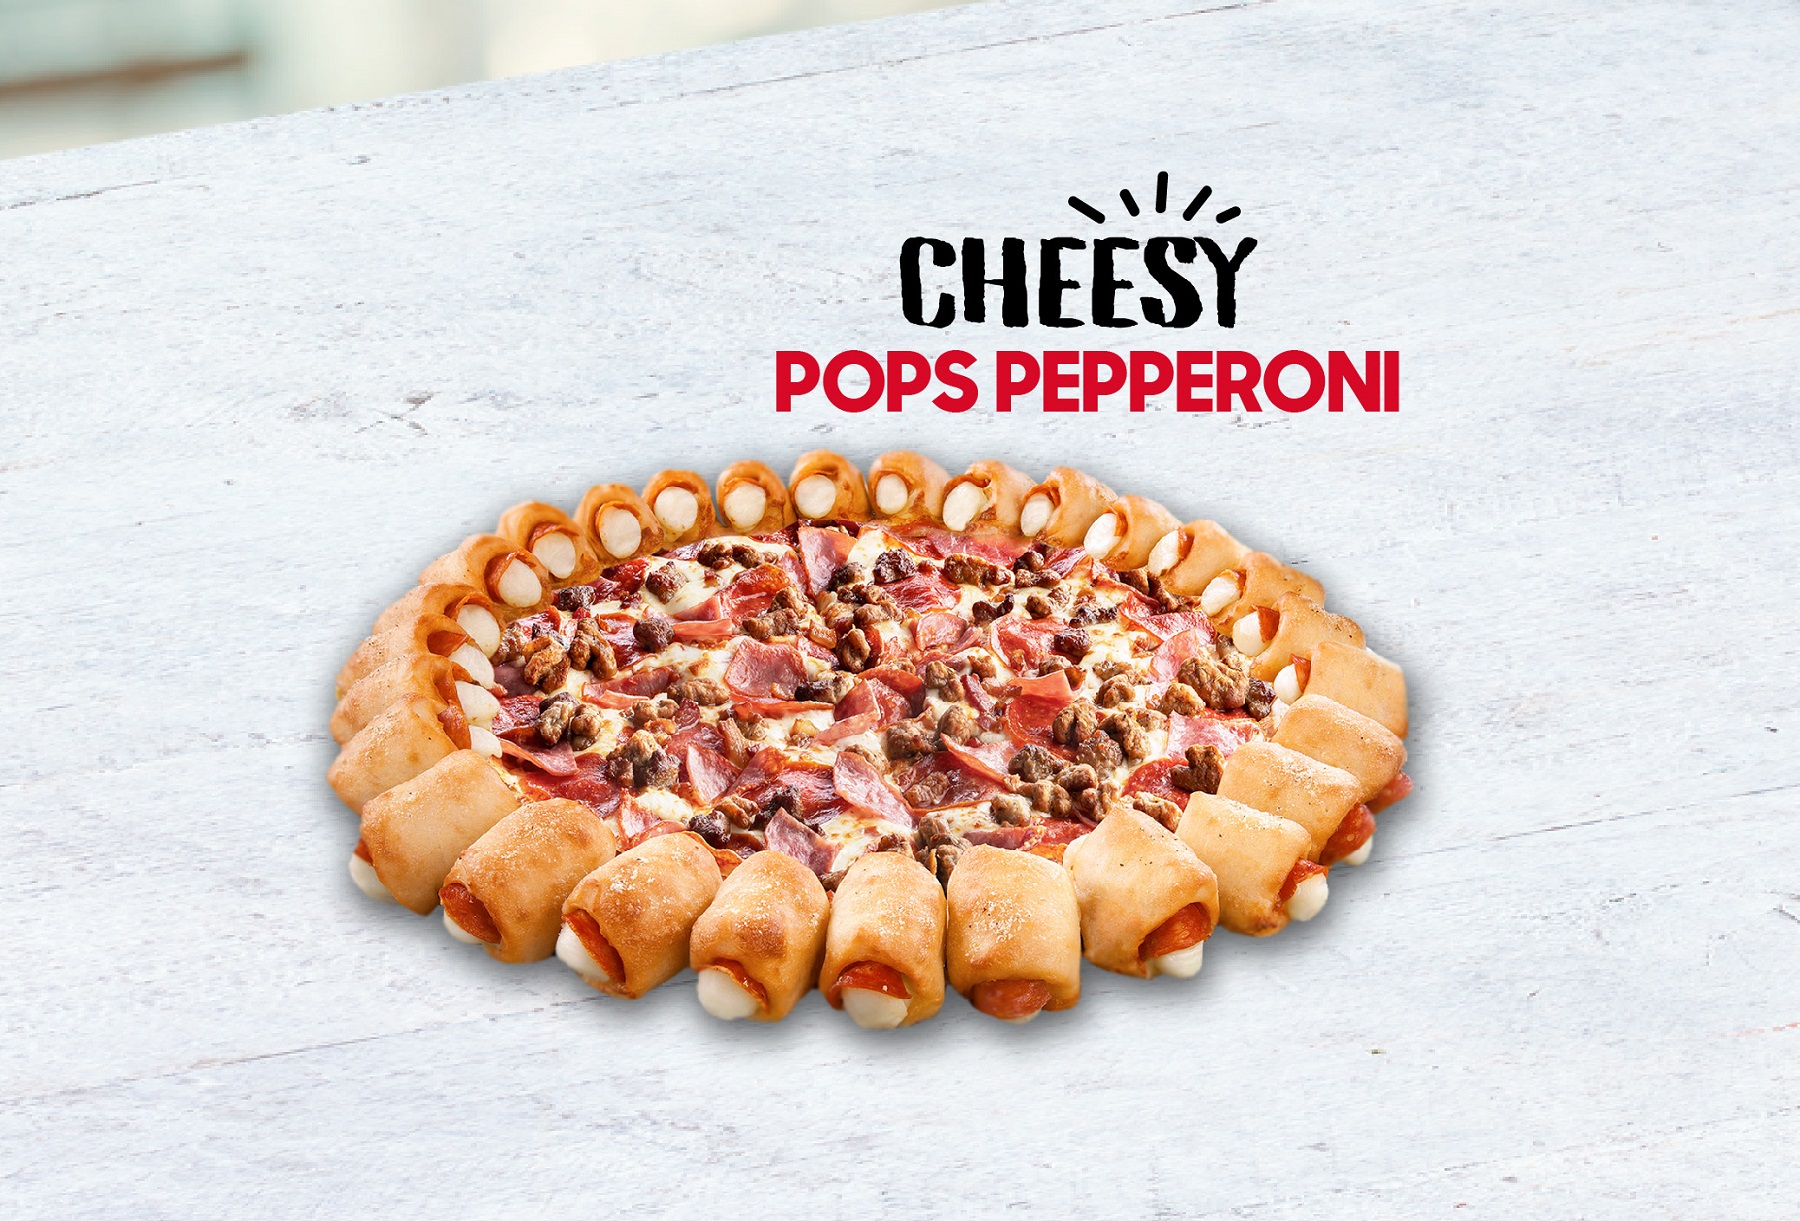 Pizza Cheesy Pops Pepperoni & Queso